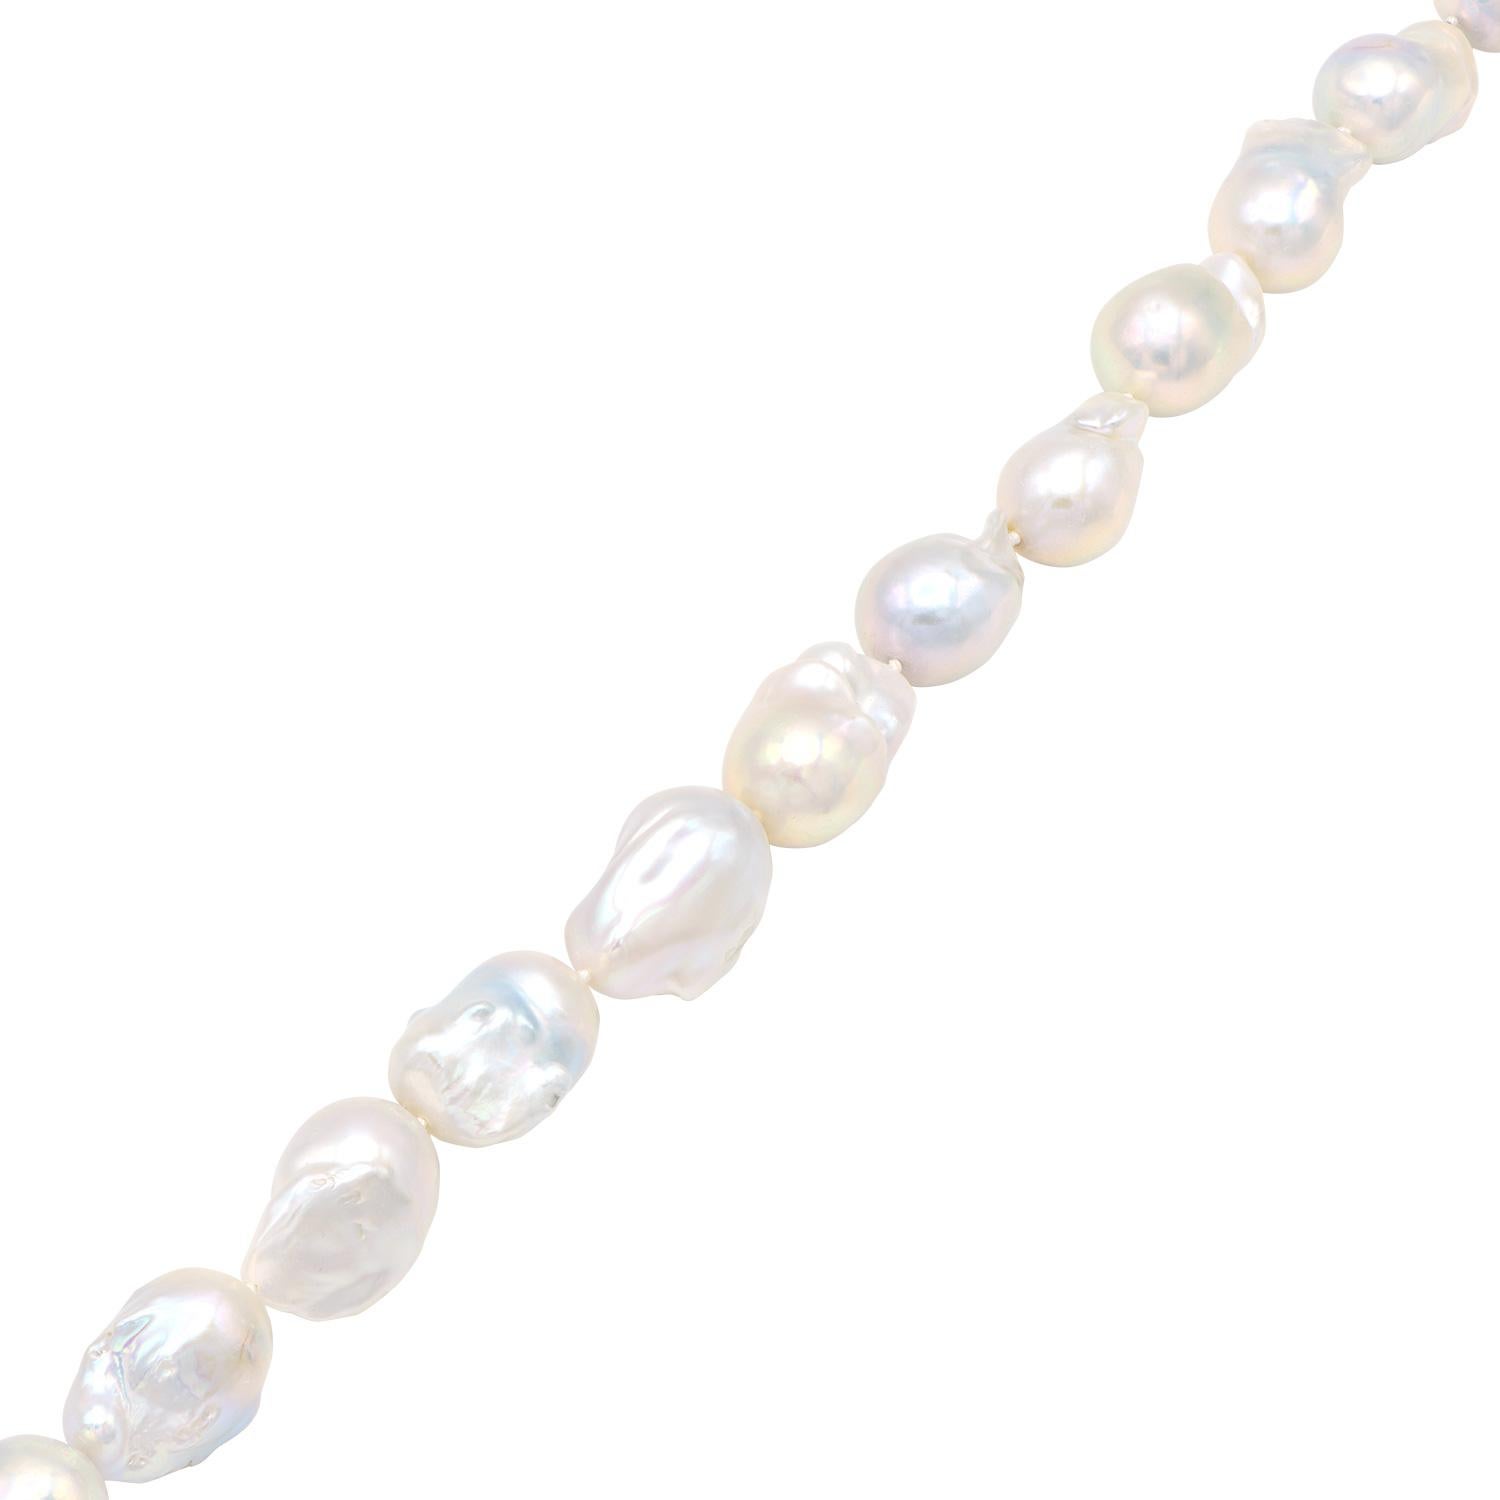 Ce collier unique et magnifique est composé de grosses perles d'eau douce blanches baroques de 18 à 22 mm. Chaque perle a un éclat et une forme uniques. Elles sont fabriquées à partir de 16 perles. Ce collier a été savamment enfilé avec un double